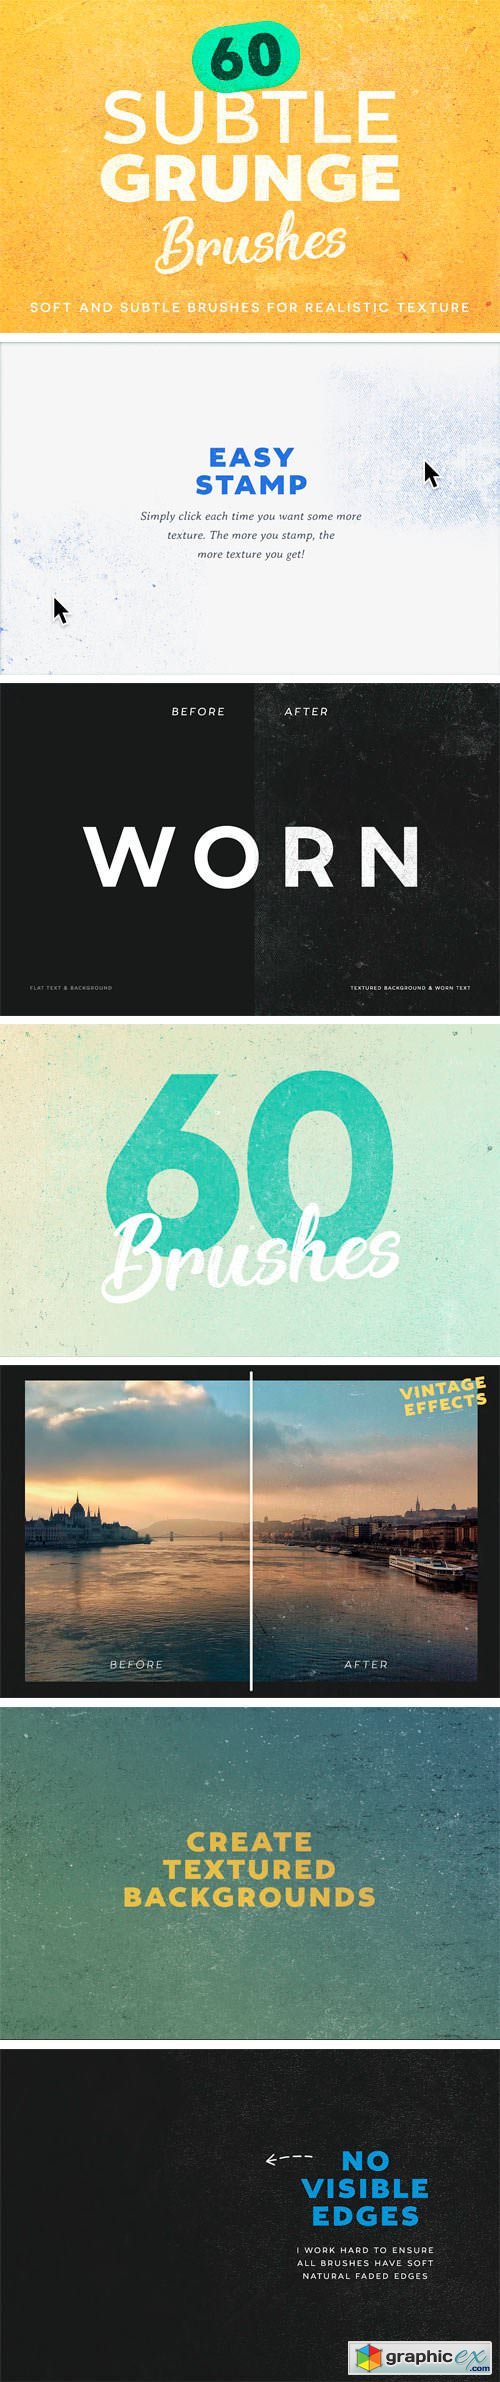 60 Subtle Grunge Brushes